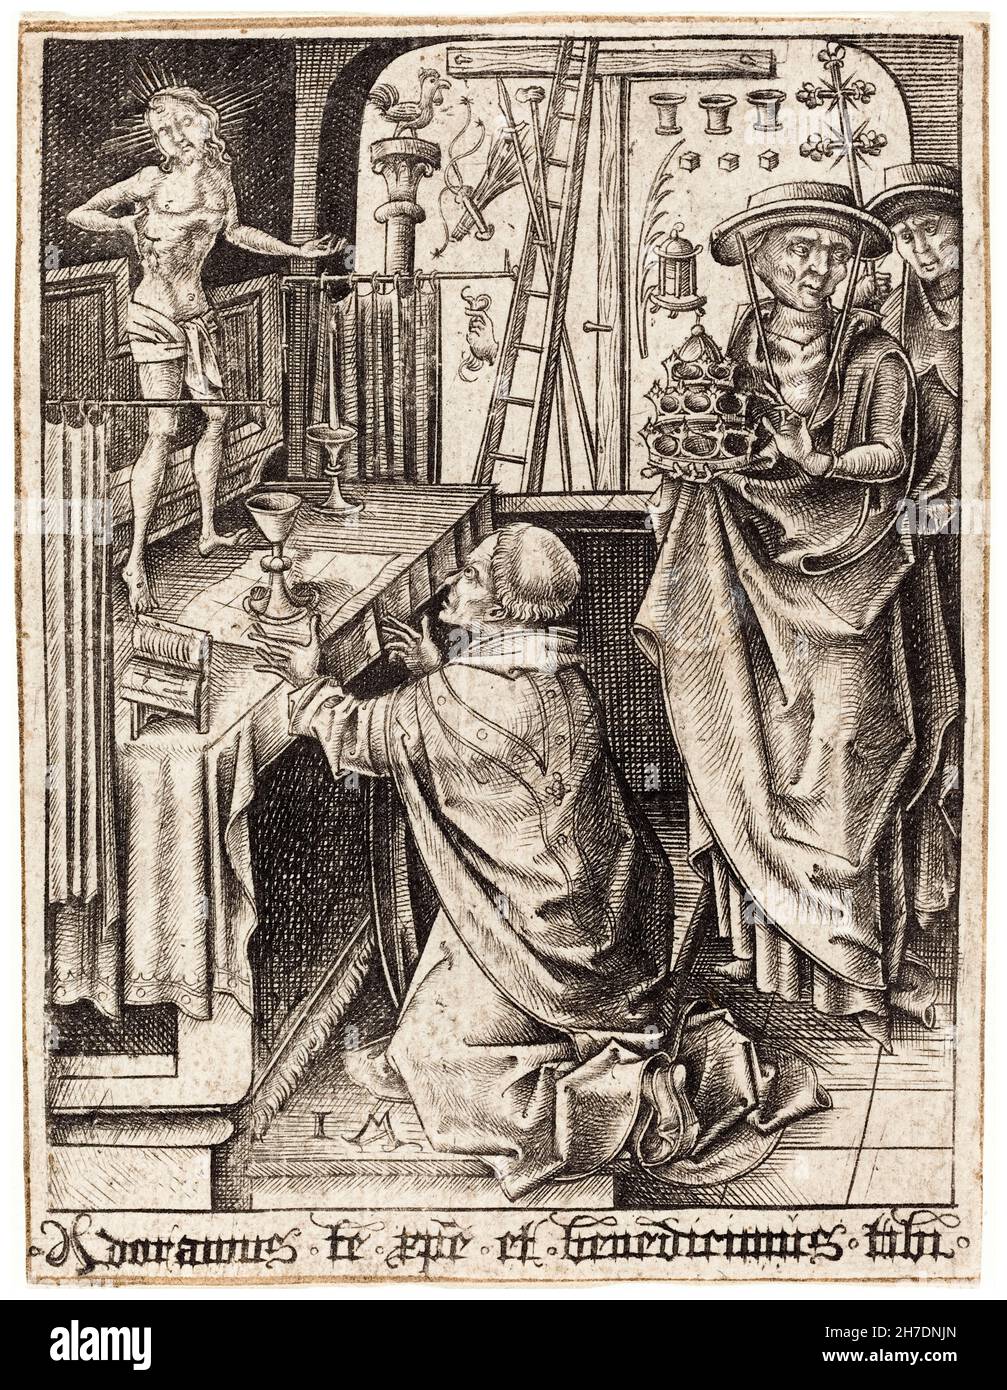 Israelhel van Meckenem, die Messe des hl. Gregor, Gravur, 1480-1490 Stockfoto